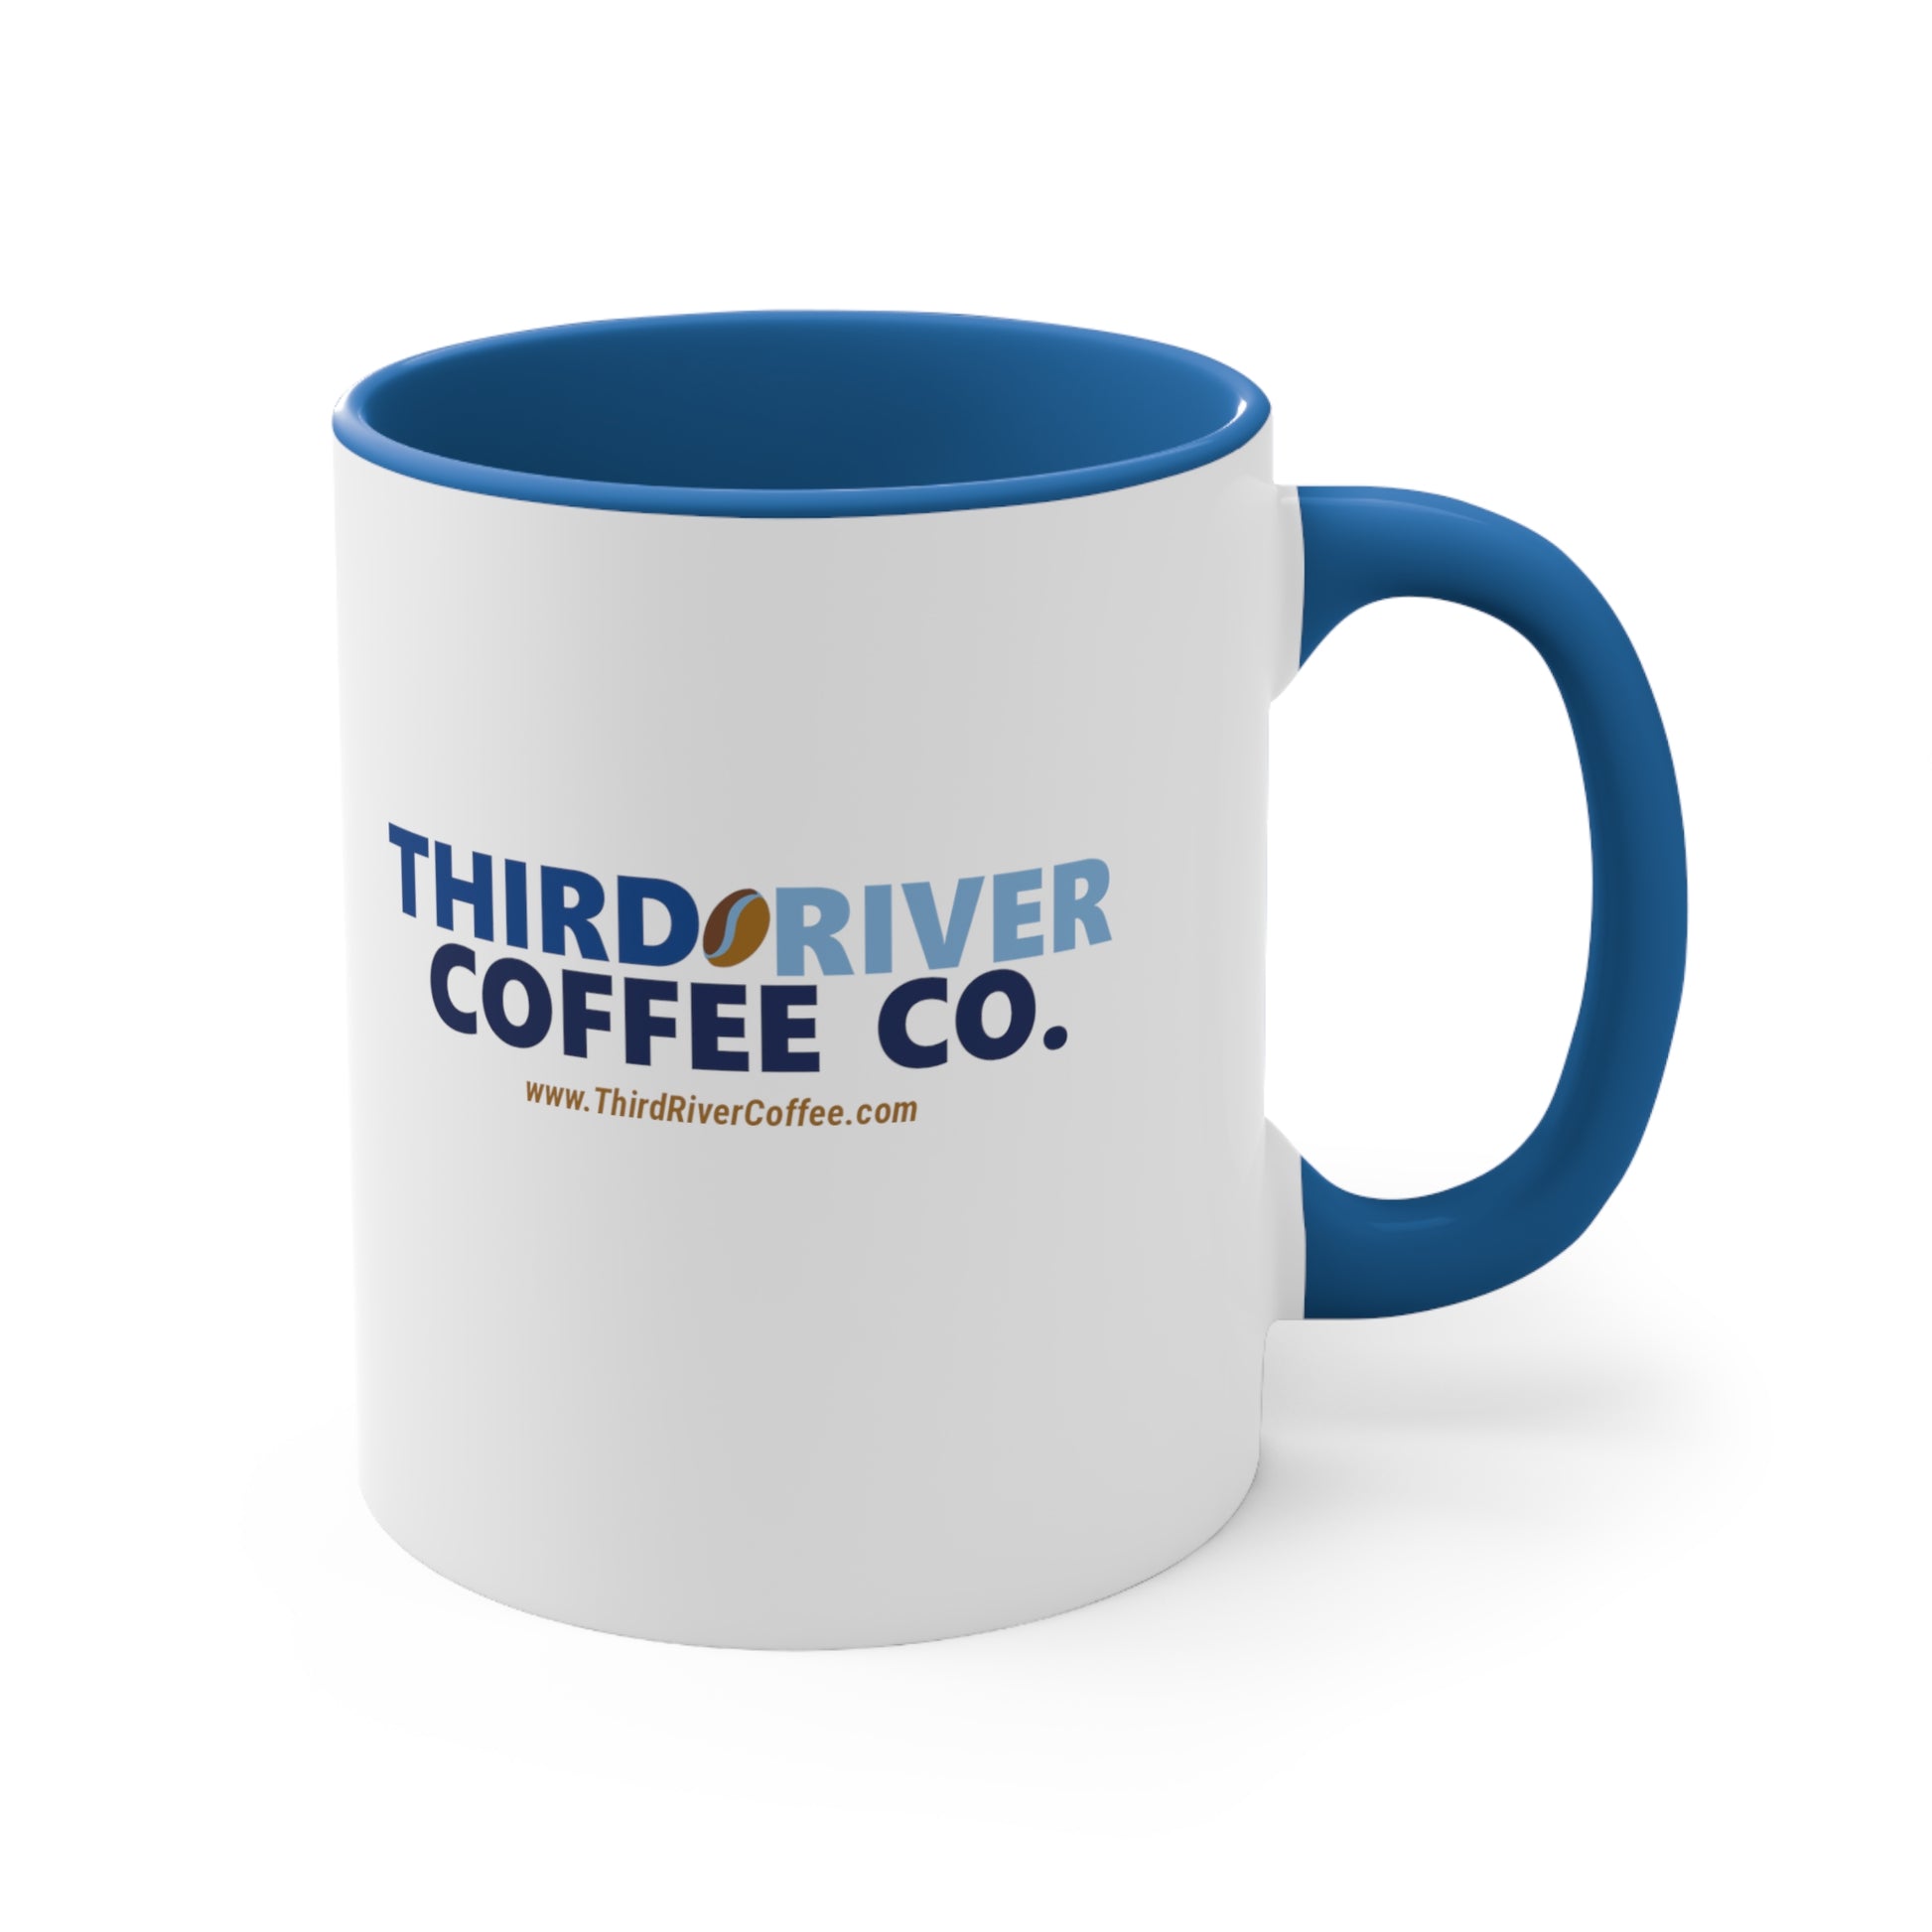 third river coffee white and blue coffee mug